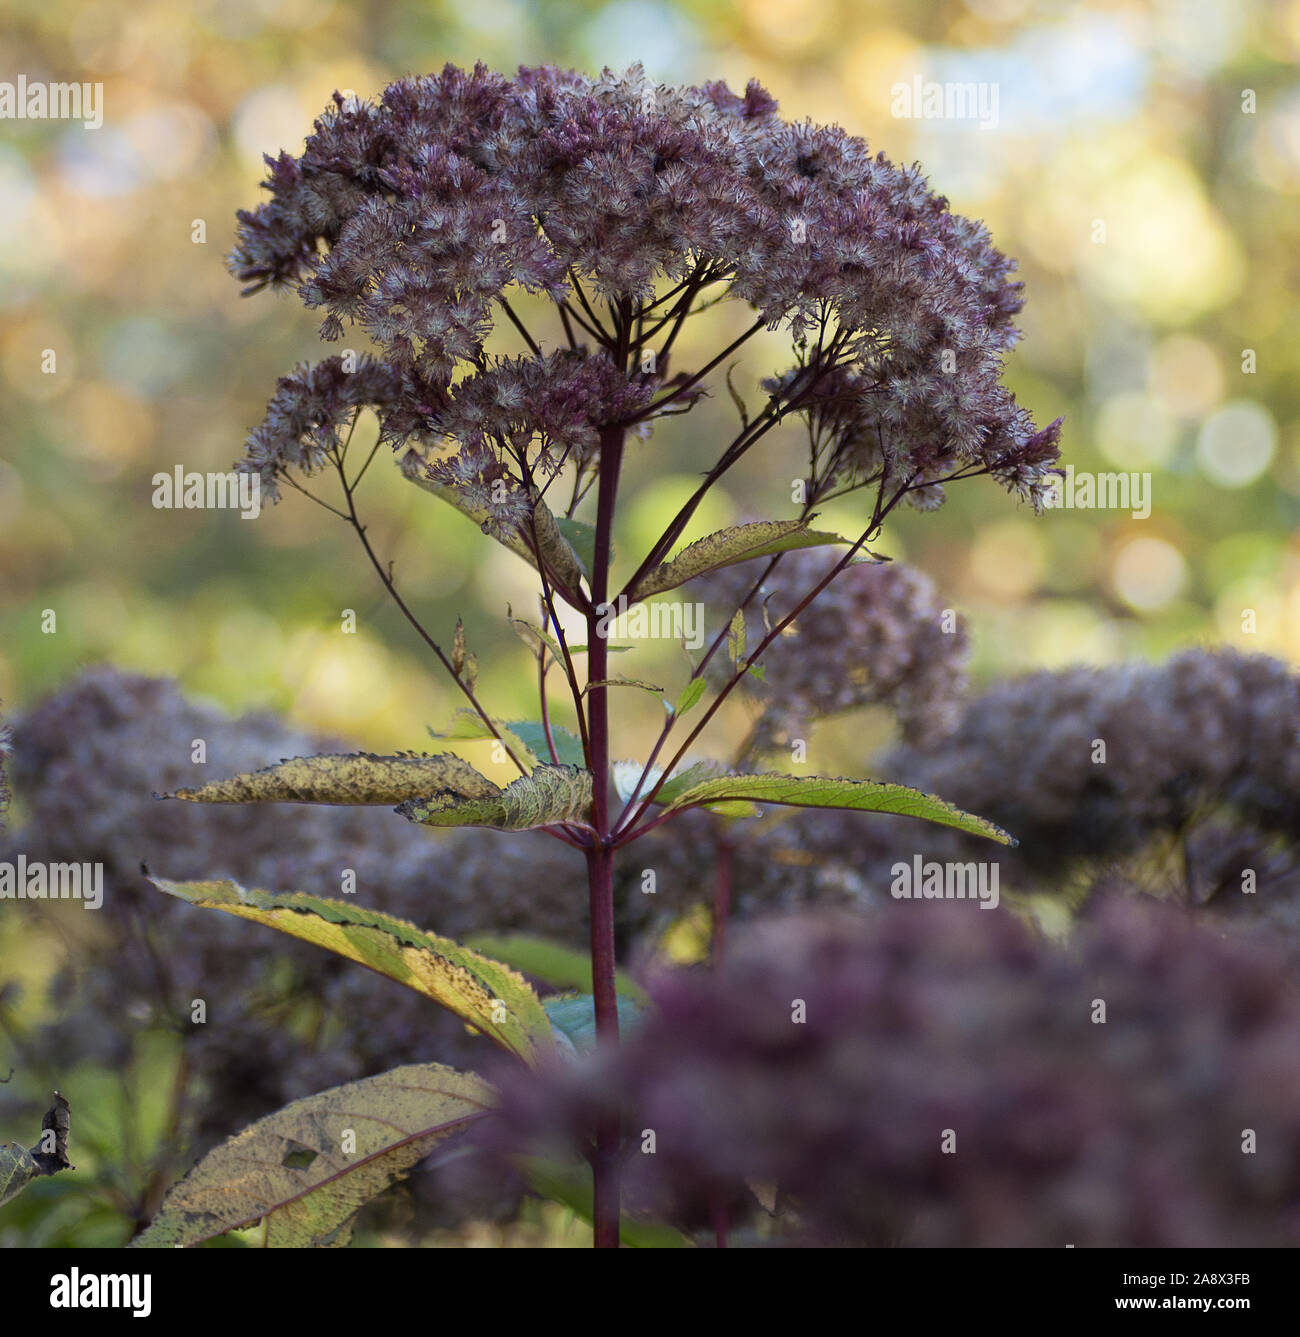 purple Joe-Pye weed, Eutrochium purpureum Stock Photo